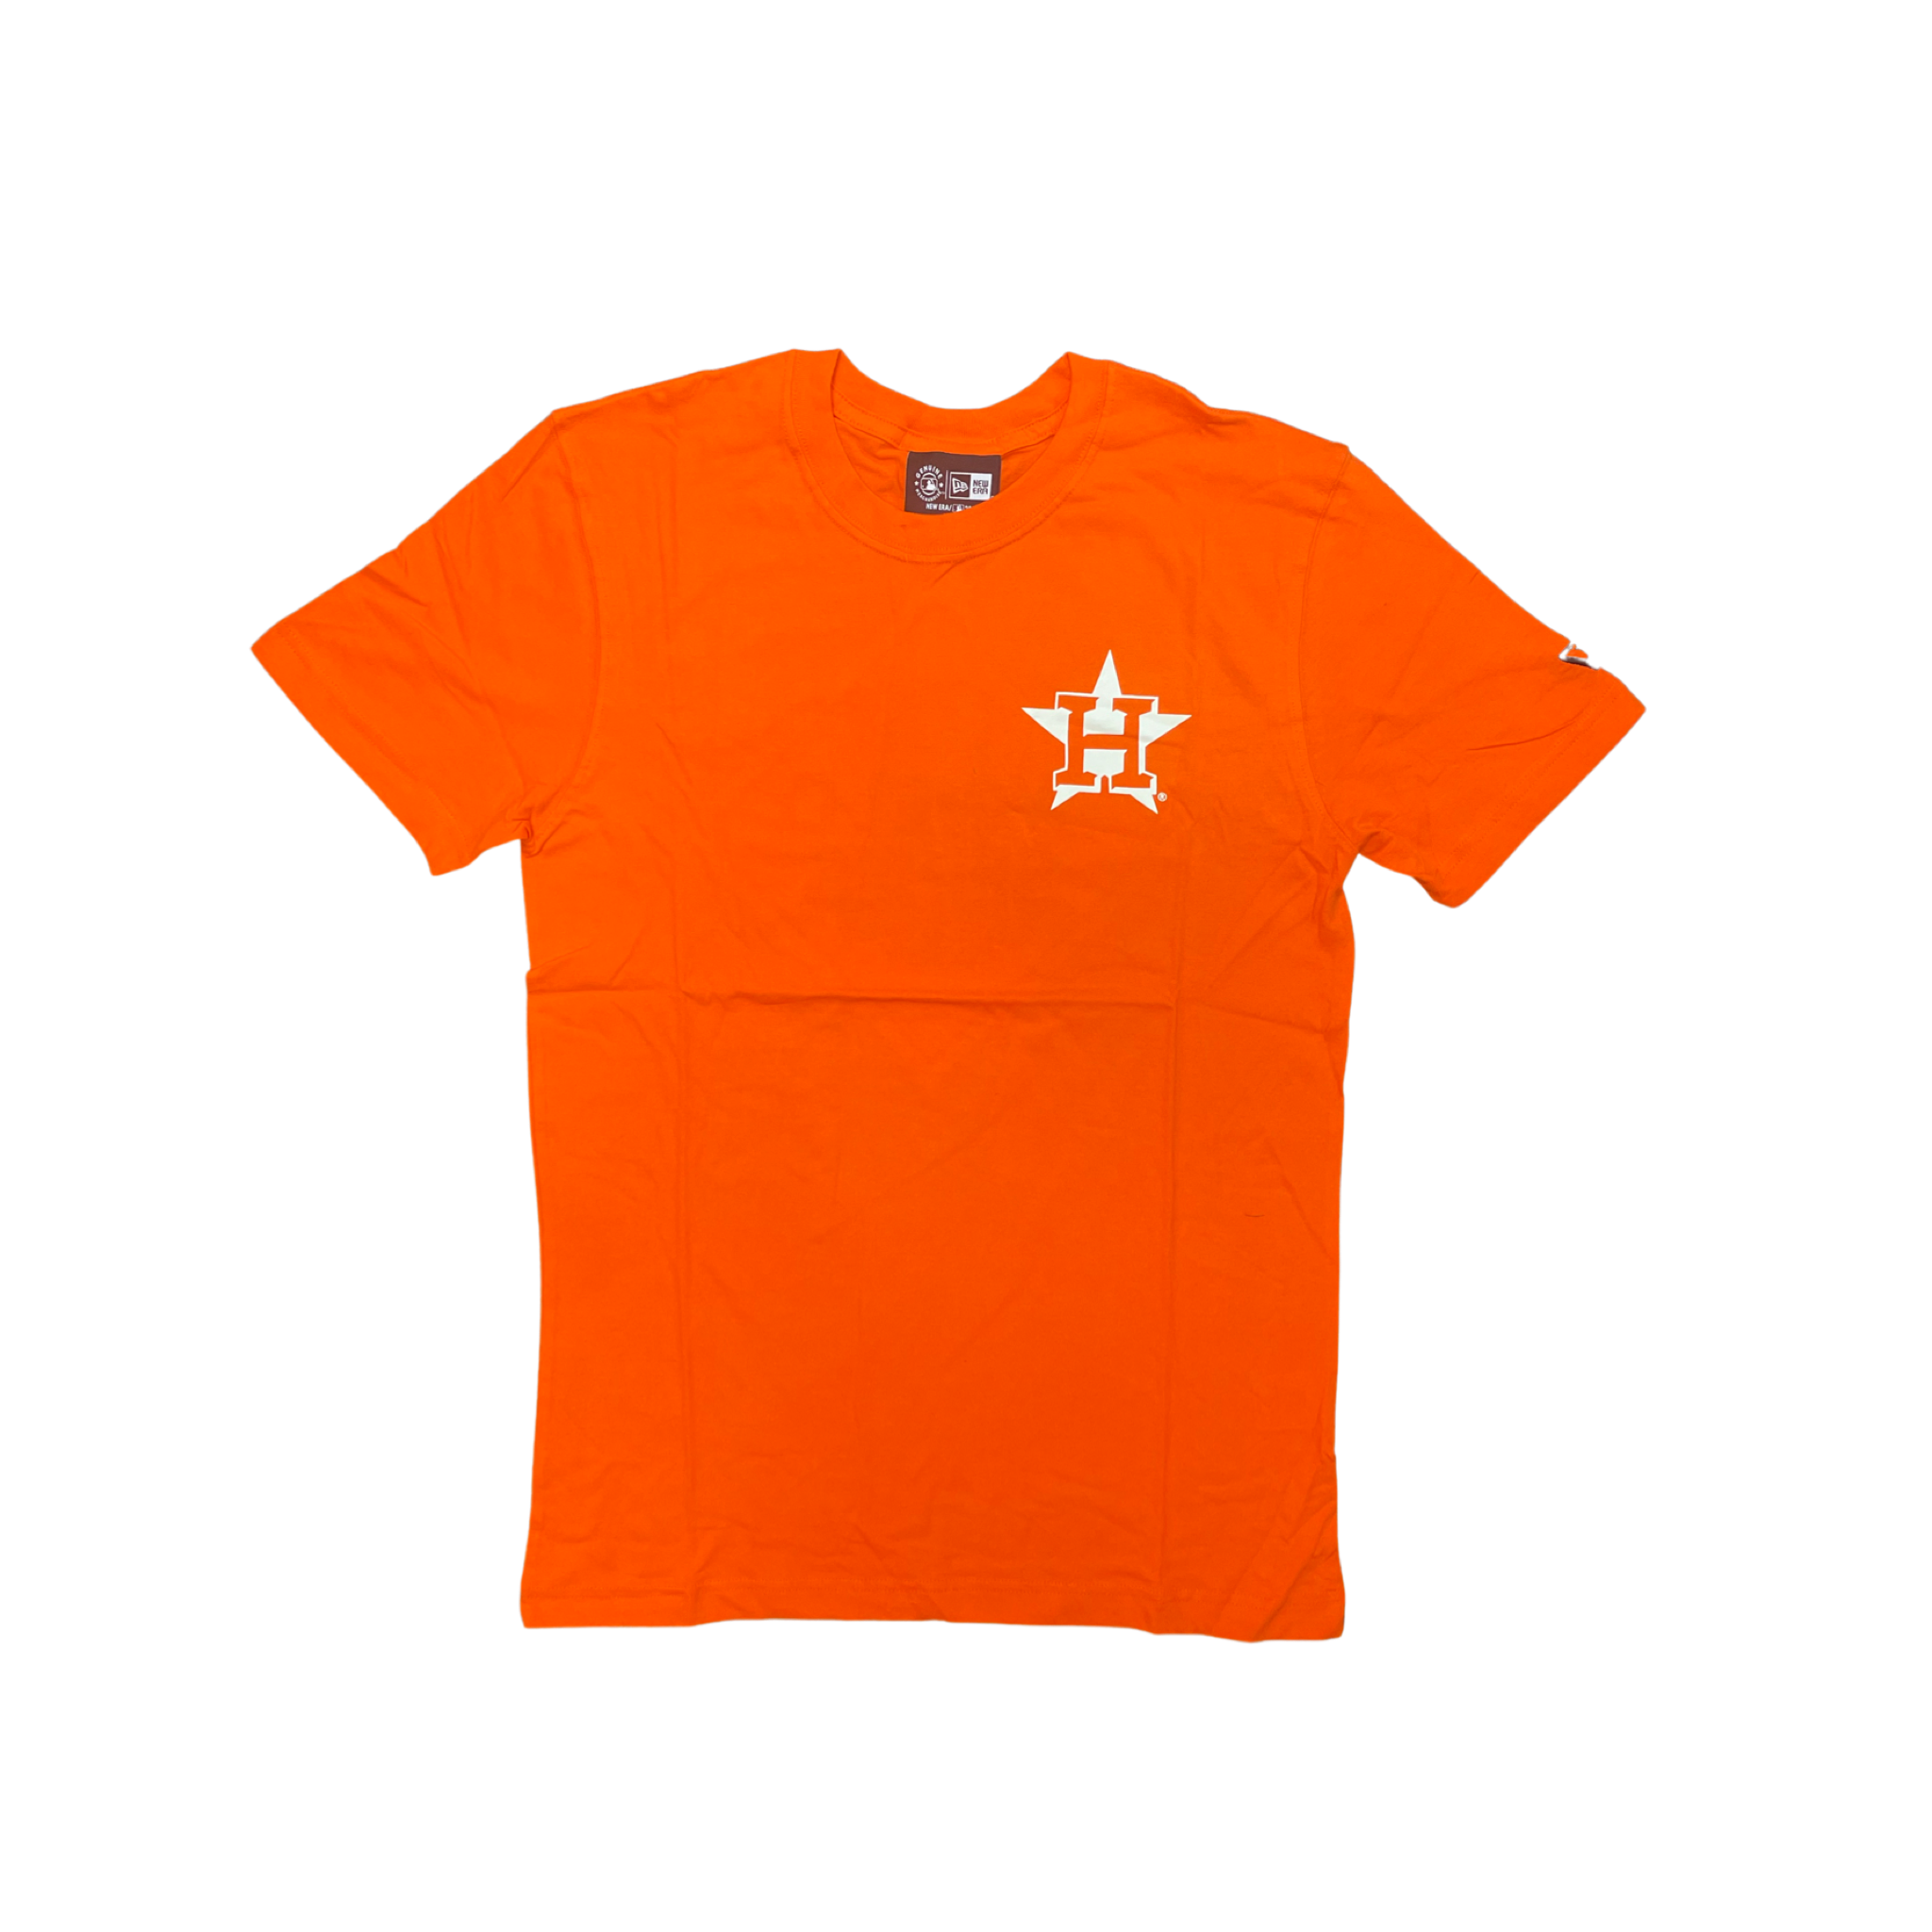 New Era Girl's Houston Astros Orange Long Sleeve T-Shirt